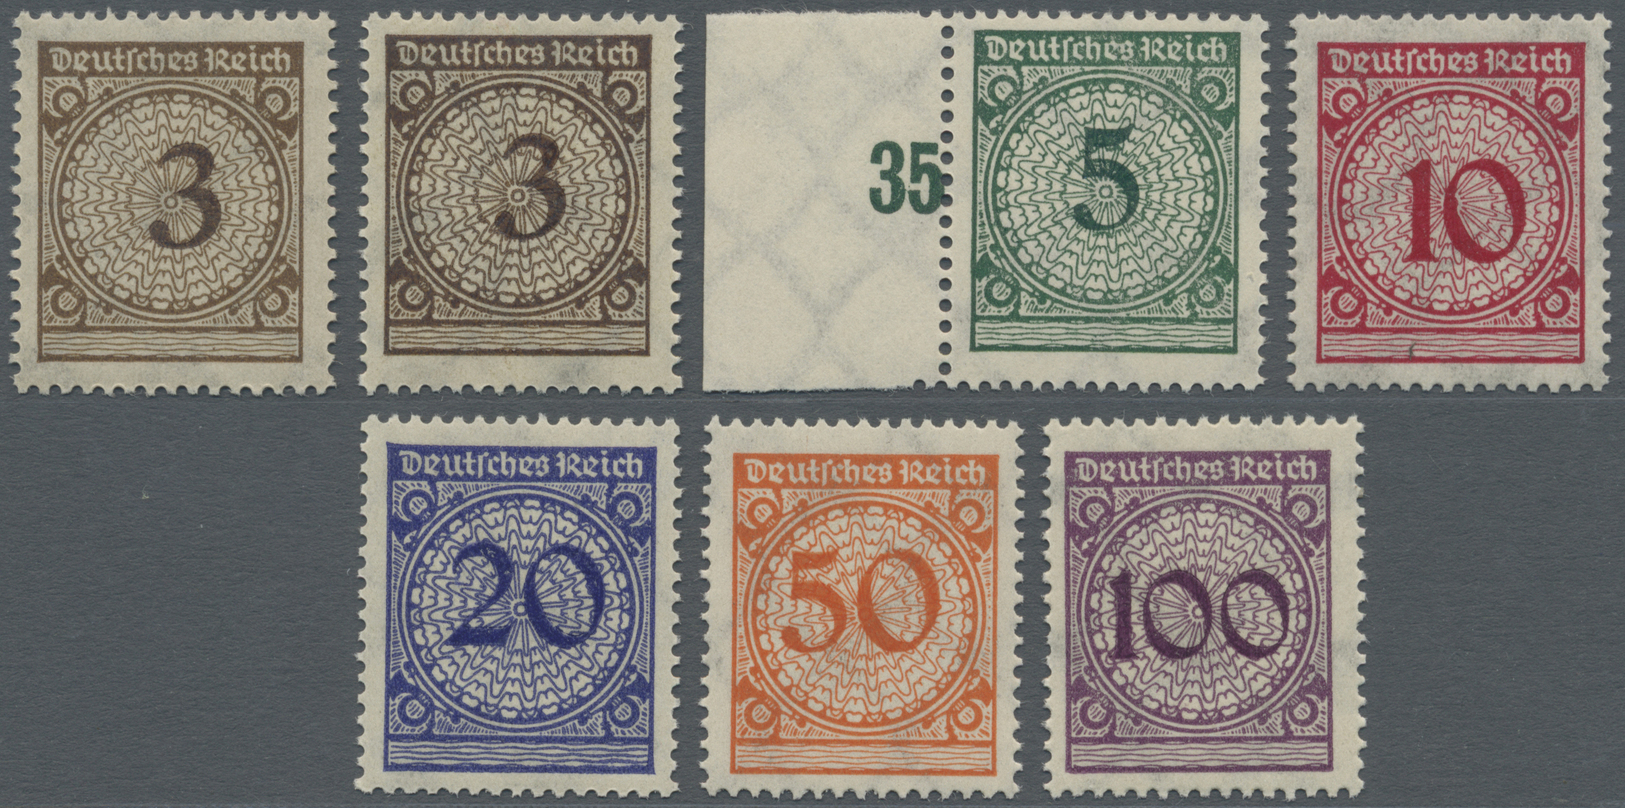 ** Deutsches Reich - Inflation: 1923, Freimarken: Korbdeckel-Muster 3 Pf Bis 100 Pf, Je Postfrisch, 3 P - Brieven En Documenten